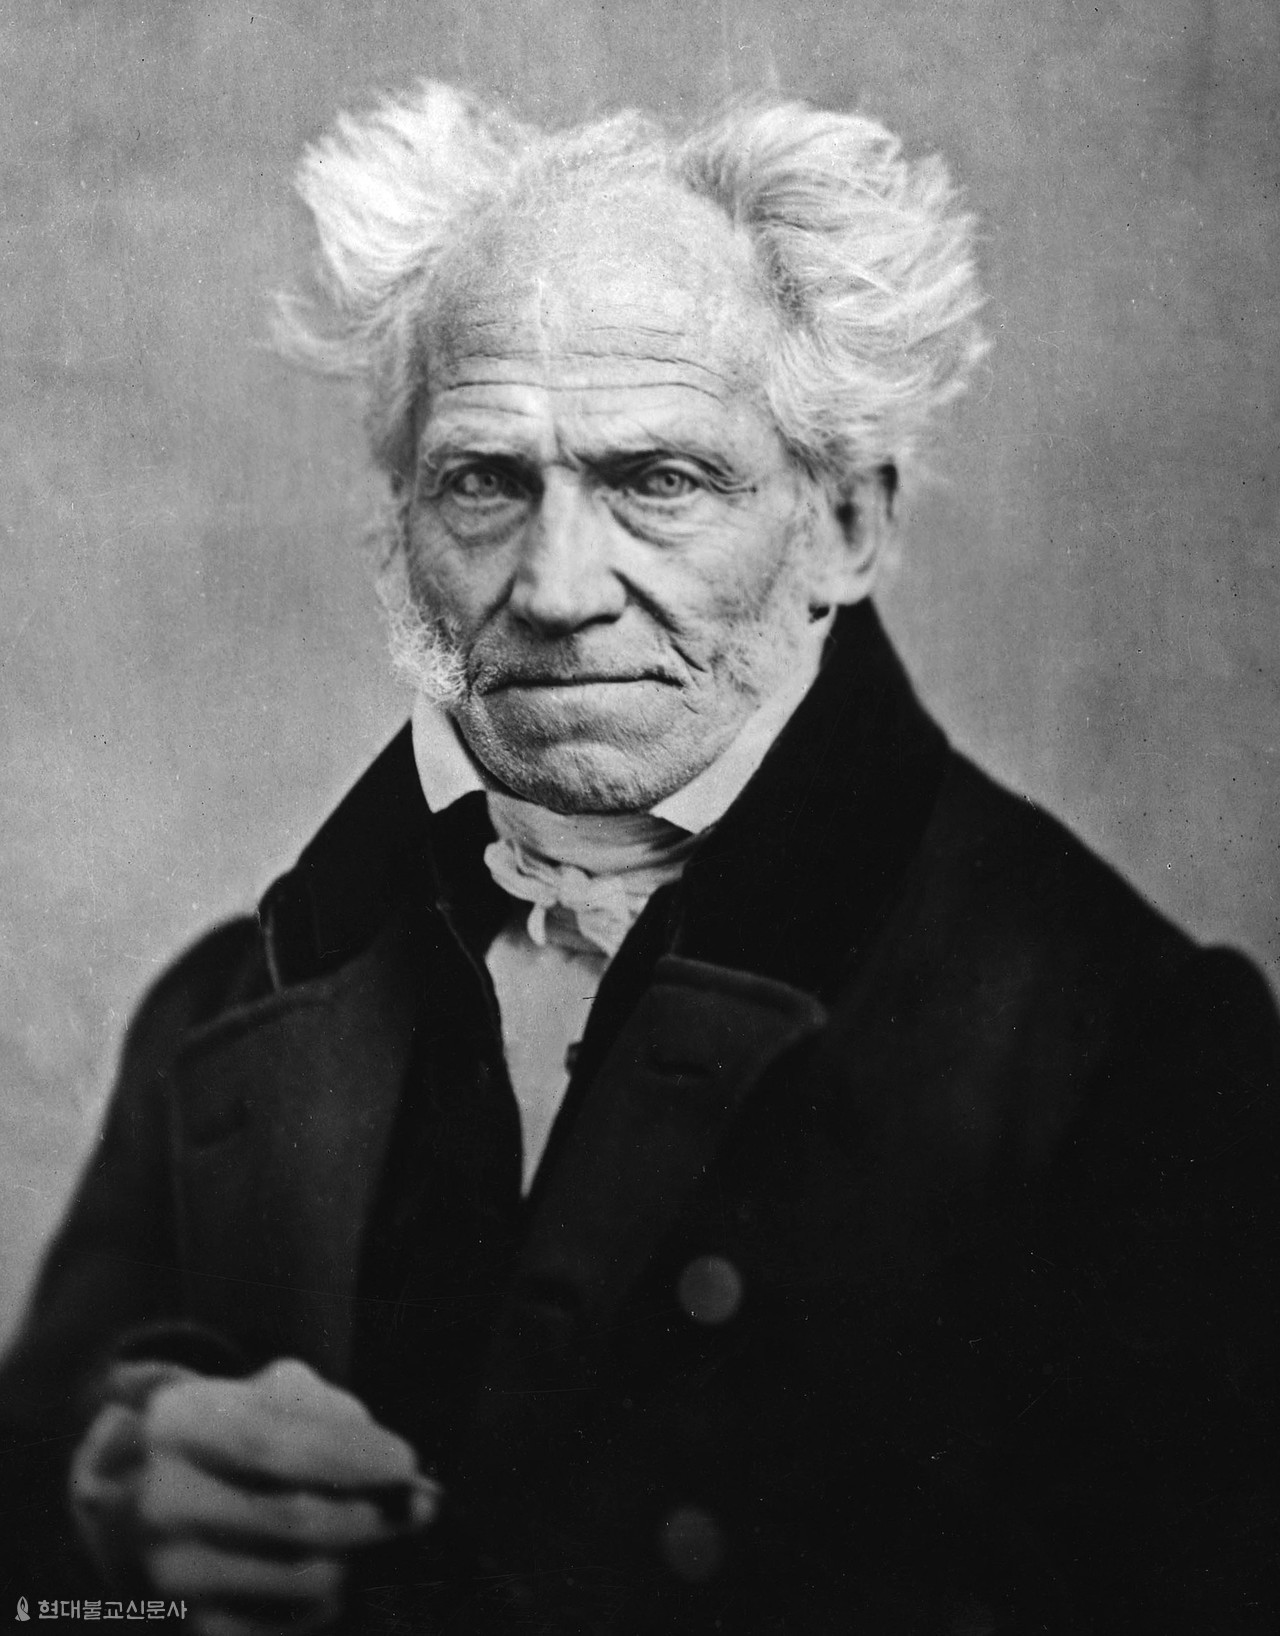 독일의 철학자 아르투어 쇼펜하우어.(Arthur Schopenhauer, 1788~1860) 1820년대 동양학자 프리드리히 마이어를 통해 힌두교와 불교를 알게 된 쇼펜하우어는 연구를 통해 서구에 동양철학의 우수성을 알린 선구자다. 당시 그의 저술은 수많은 사상가들에게 영향을 끼쳤다.